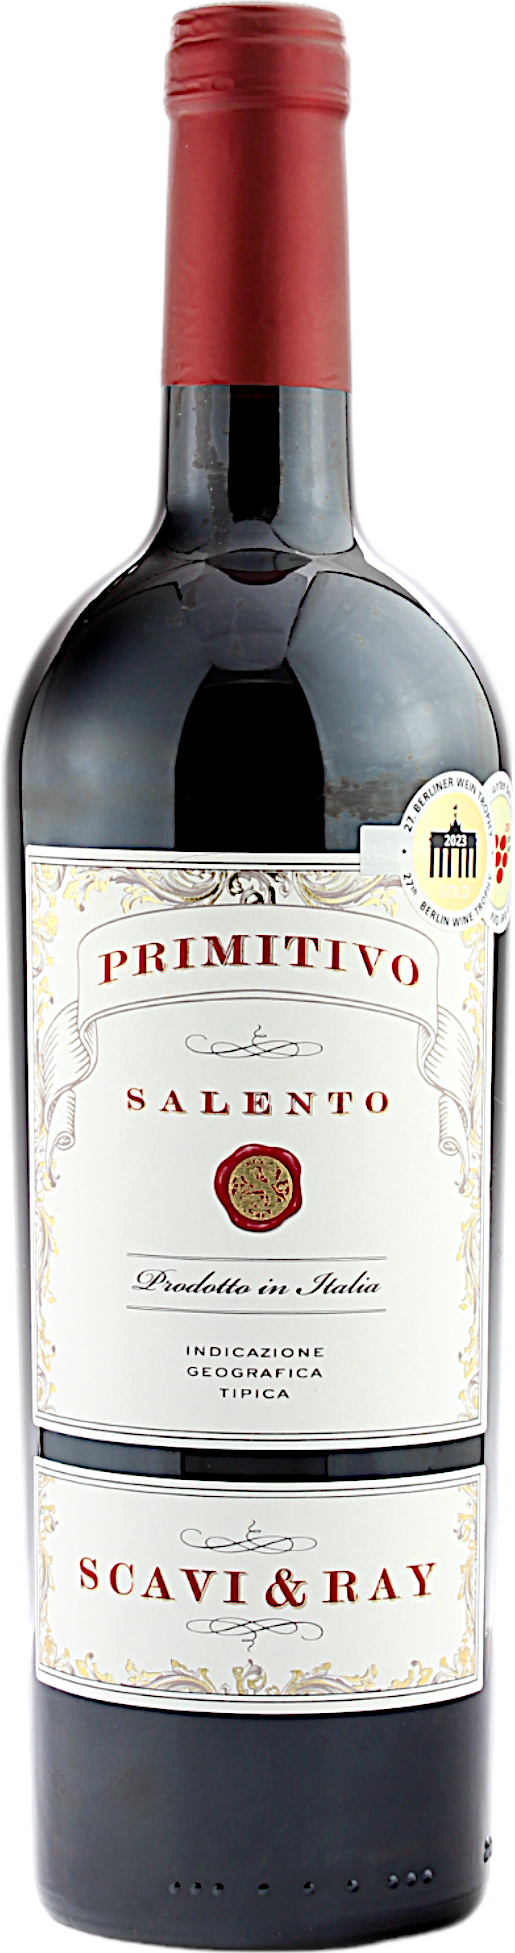 SCAVI & RAY Primitivo Salento IGT 13.0% 0,75l